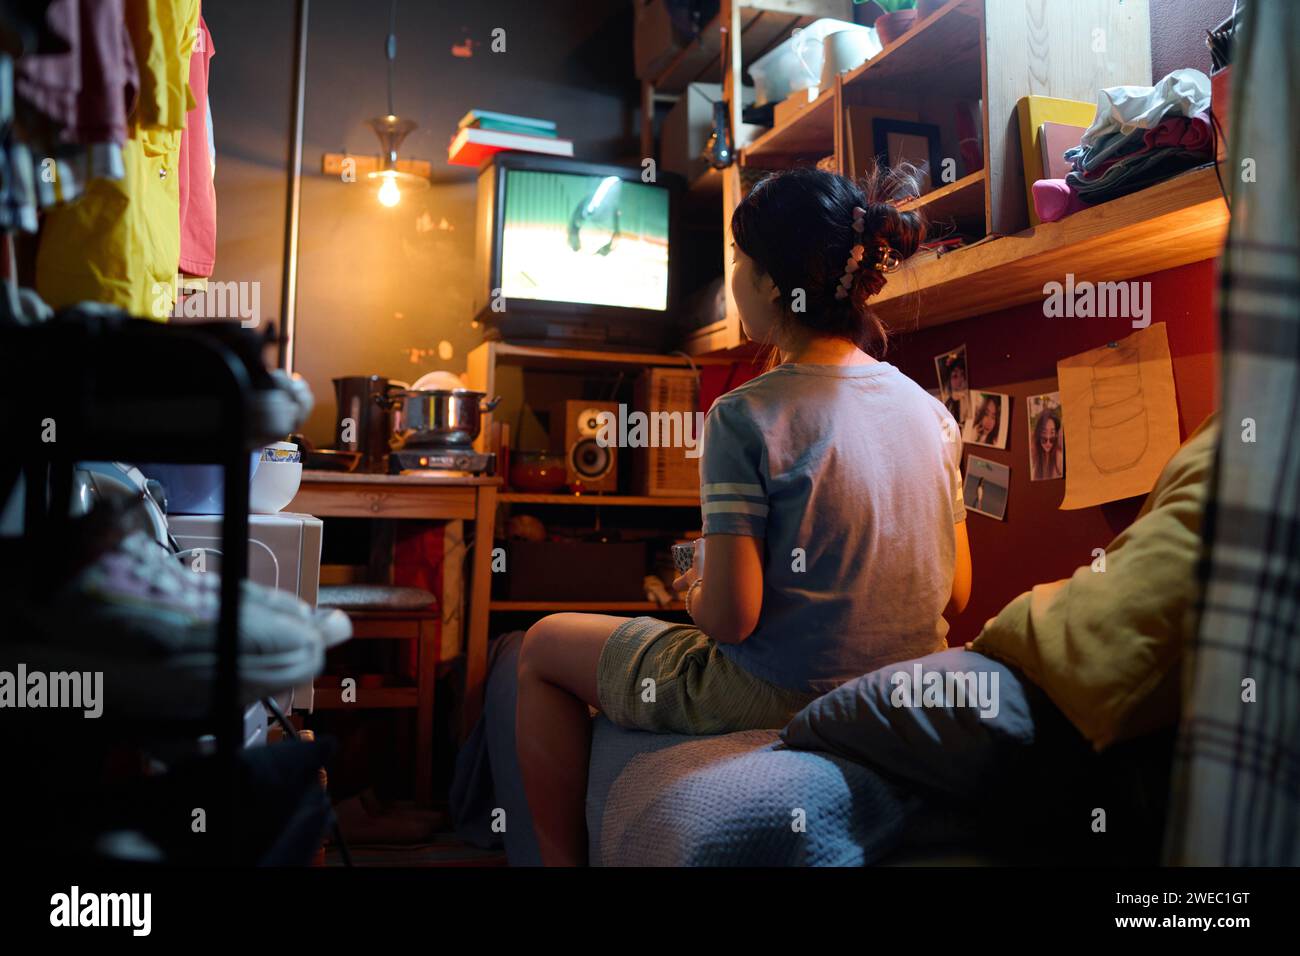 Rückansicht einer jungen asiatischen Frau in grauem T-Shirt, die auf dem Bett vor dem Bildschirm des Fernsehers sitzt und in Ruhe Fernsehen sieht Stockfoto